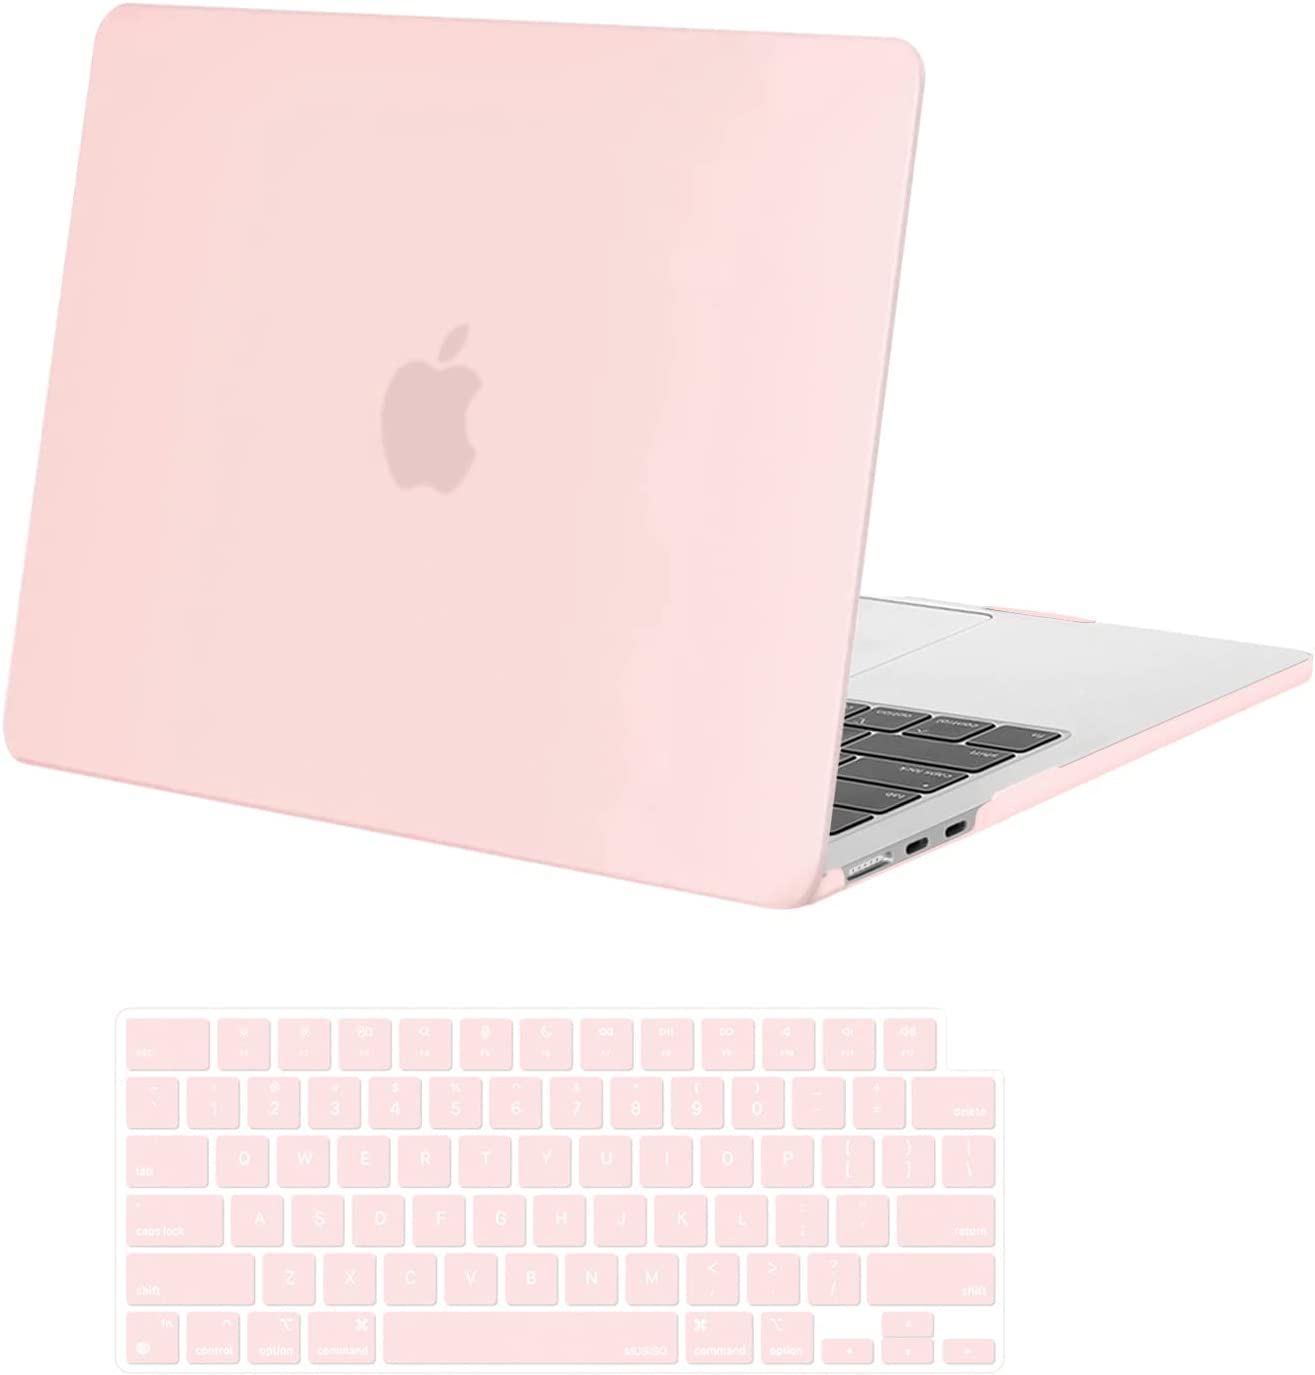 pink apple laptop